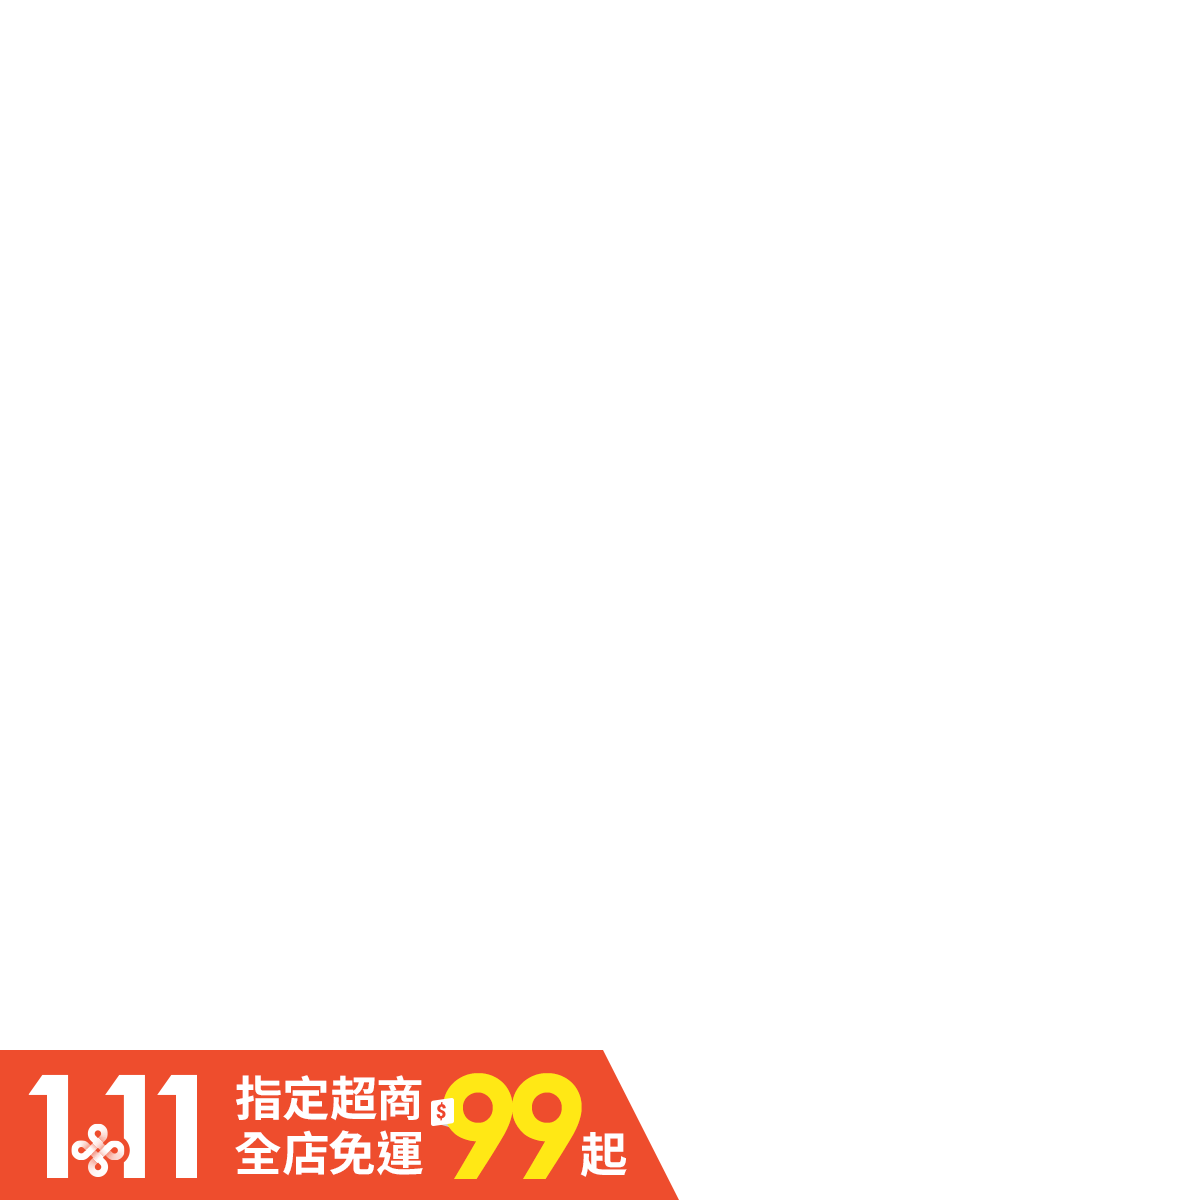 拳擊大胃王1 11完散本區 日高建男 霸氣貓漫畫小說現貨旗艦店 現貨 榮 蝦皮購物